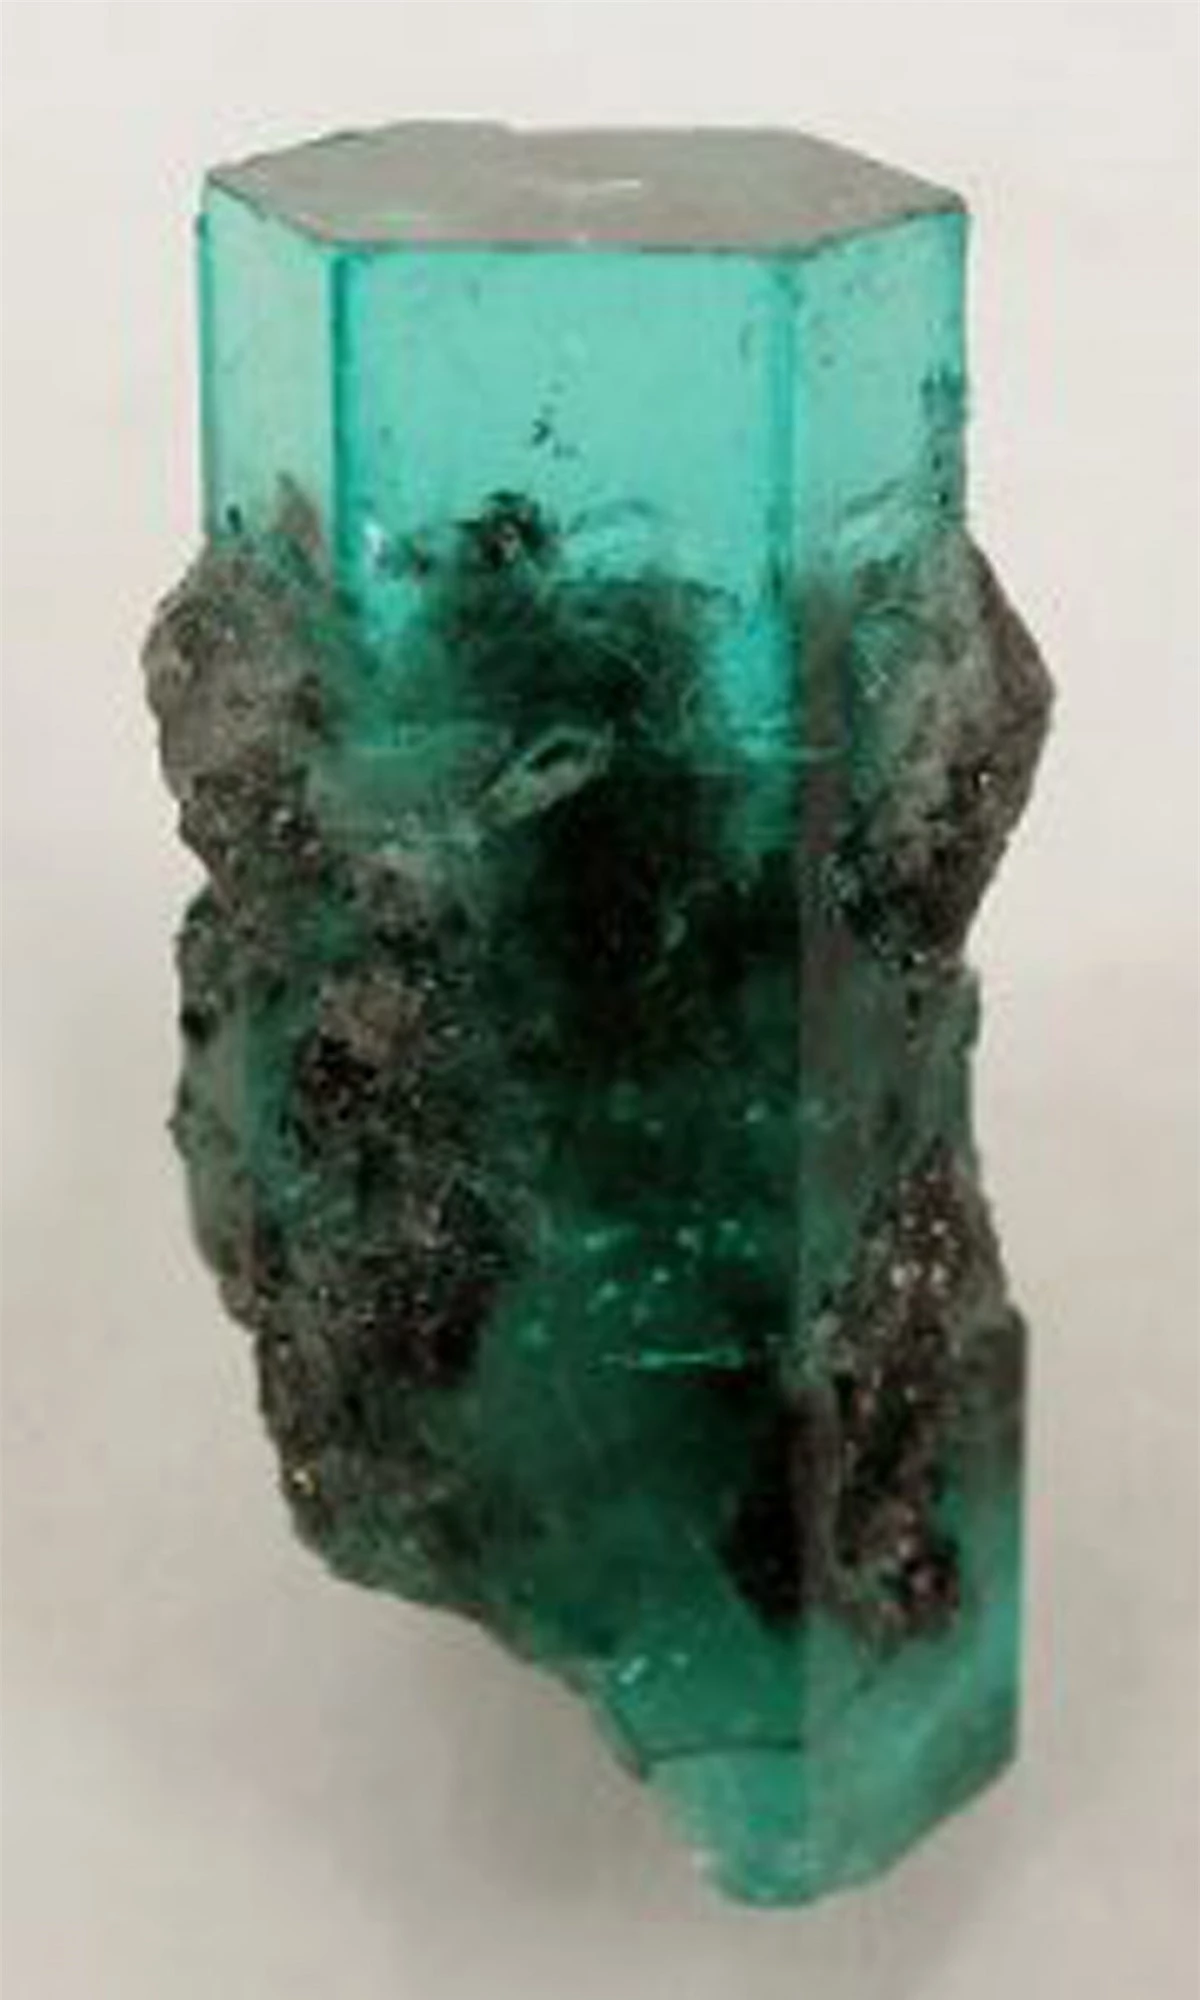 Viên đá quý Emerald có giá 305.000 USD mỗi carat.